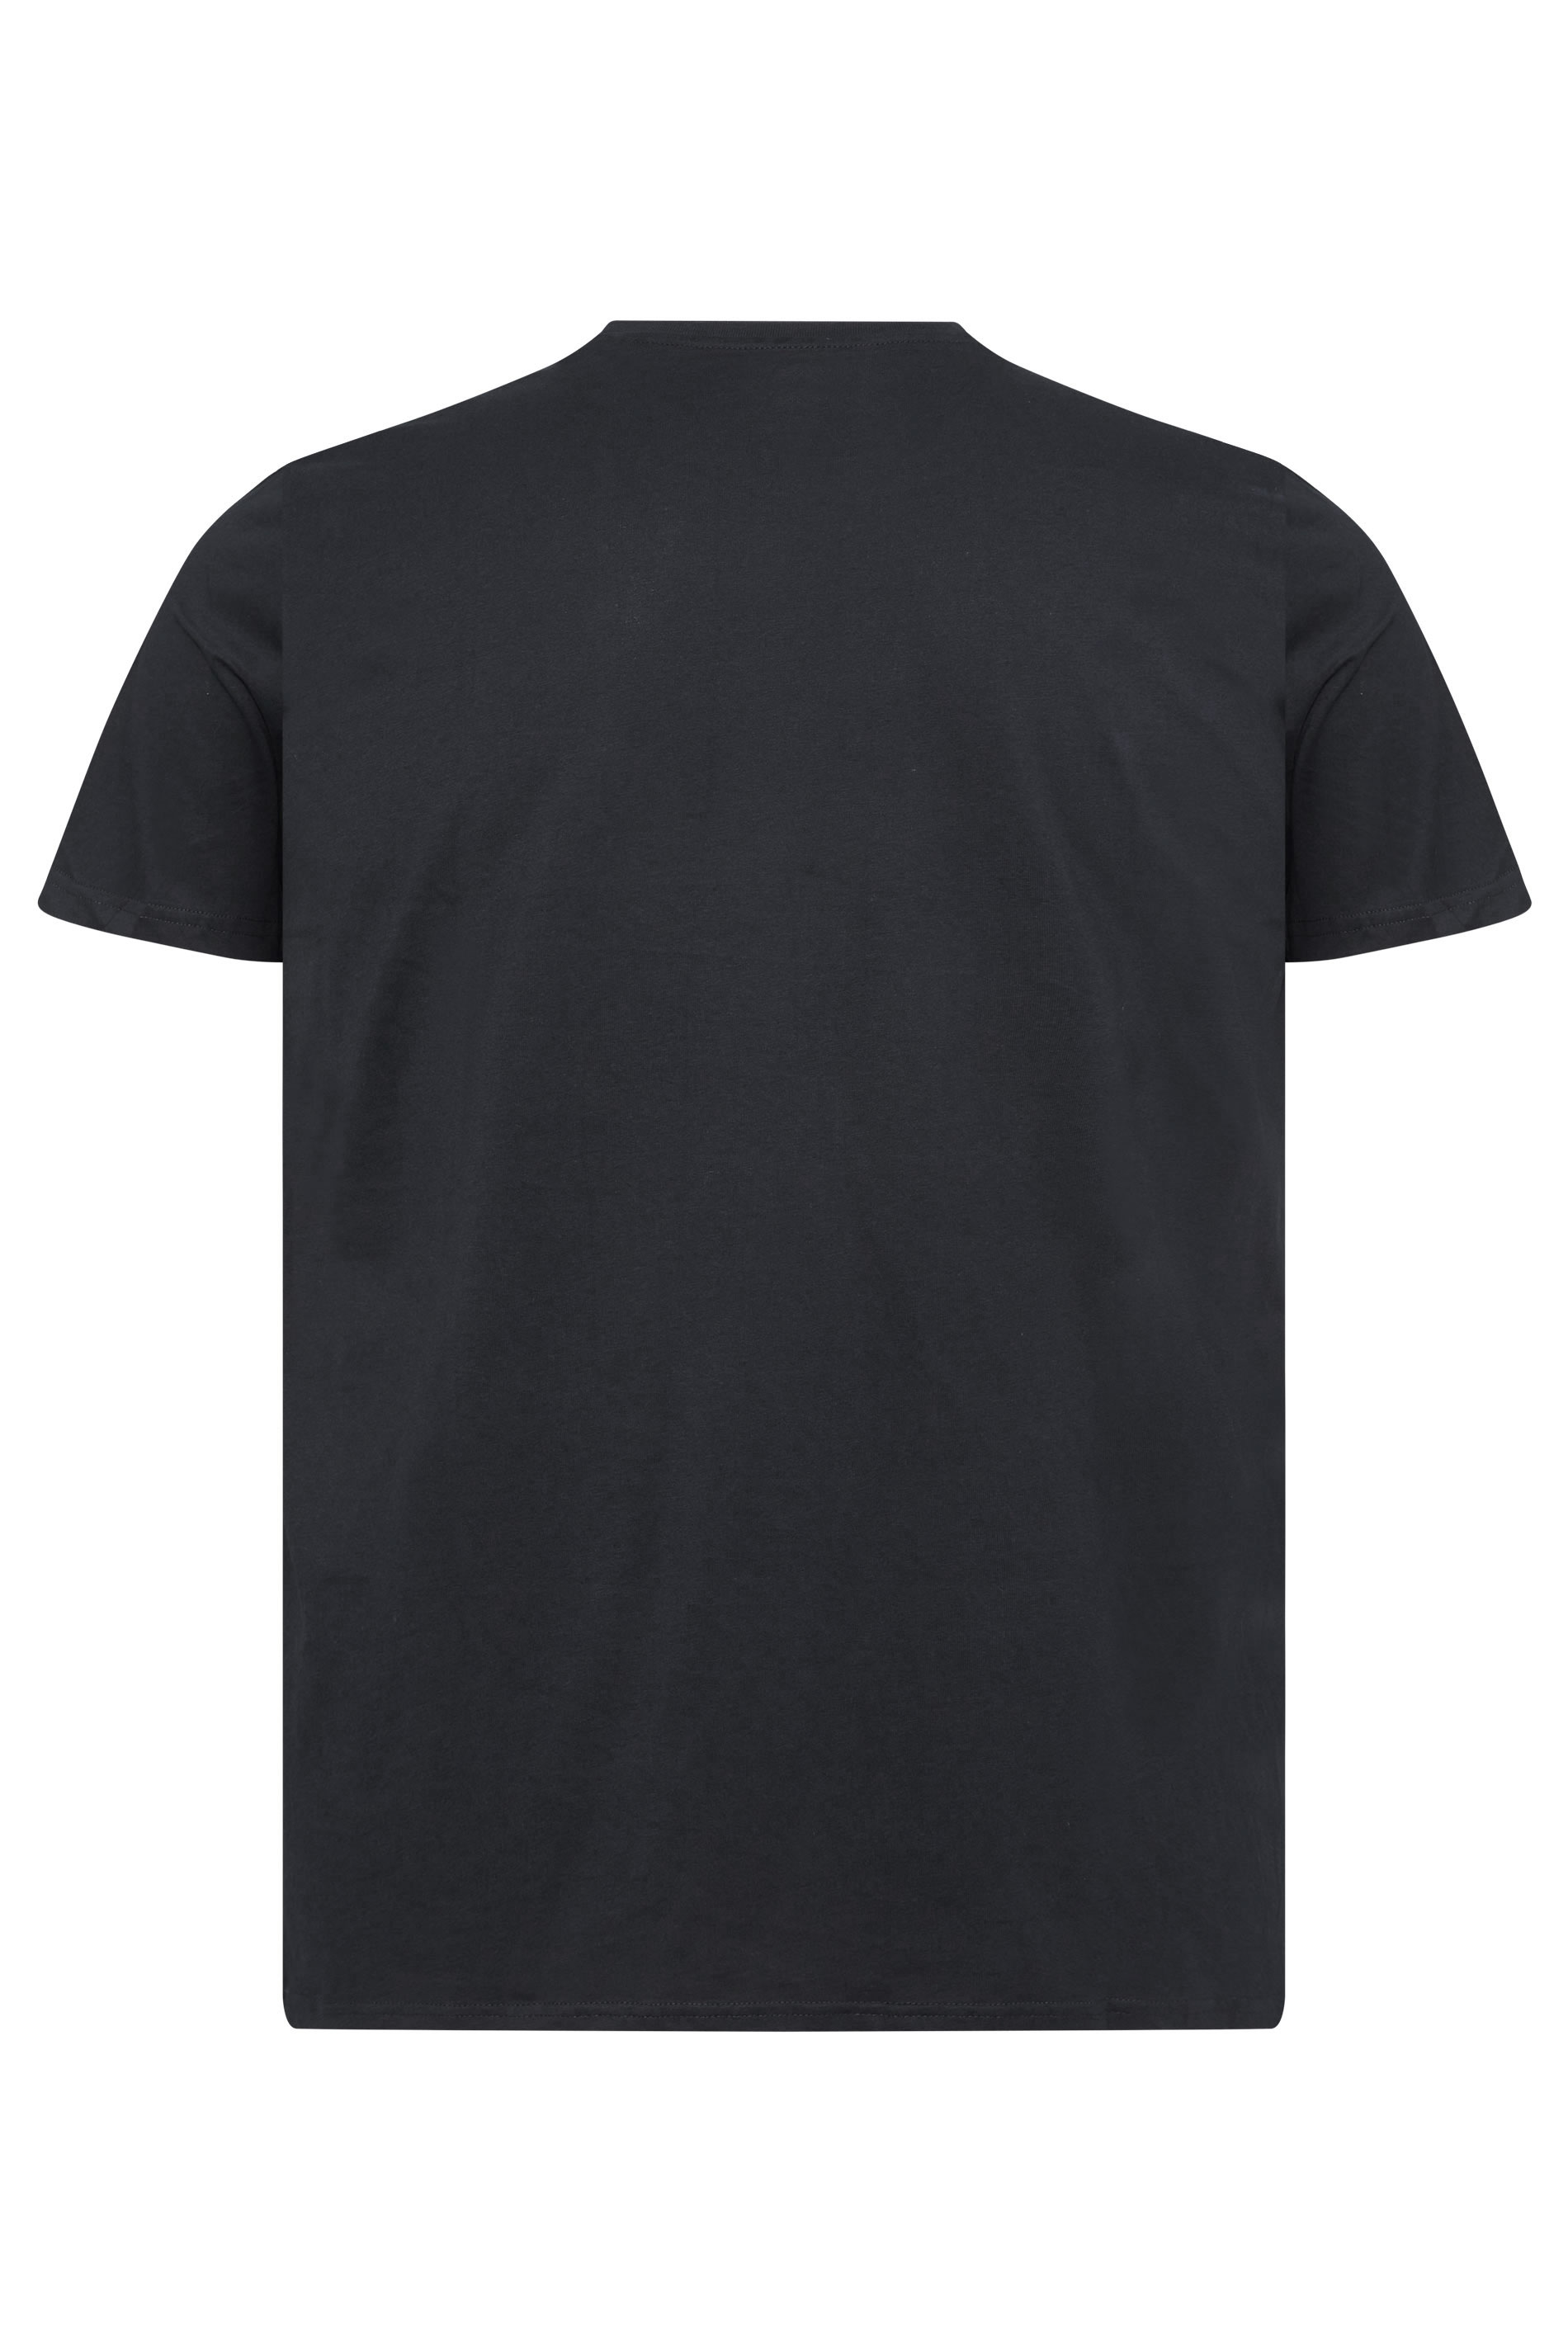 BadRhino 5 PACK Black Core T-Shirts | BadRhino